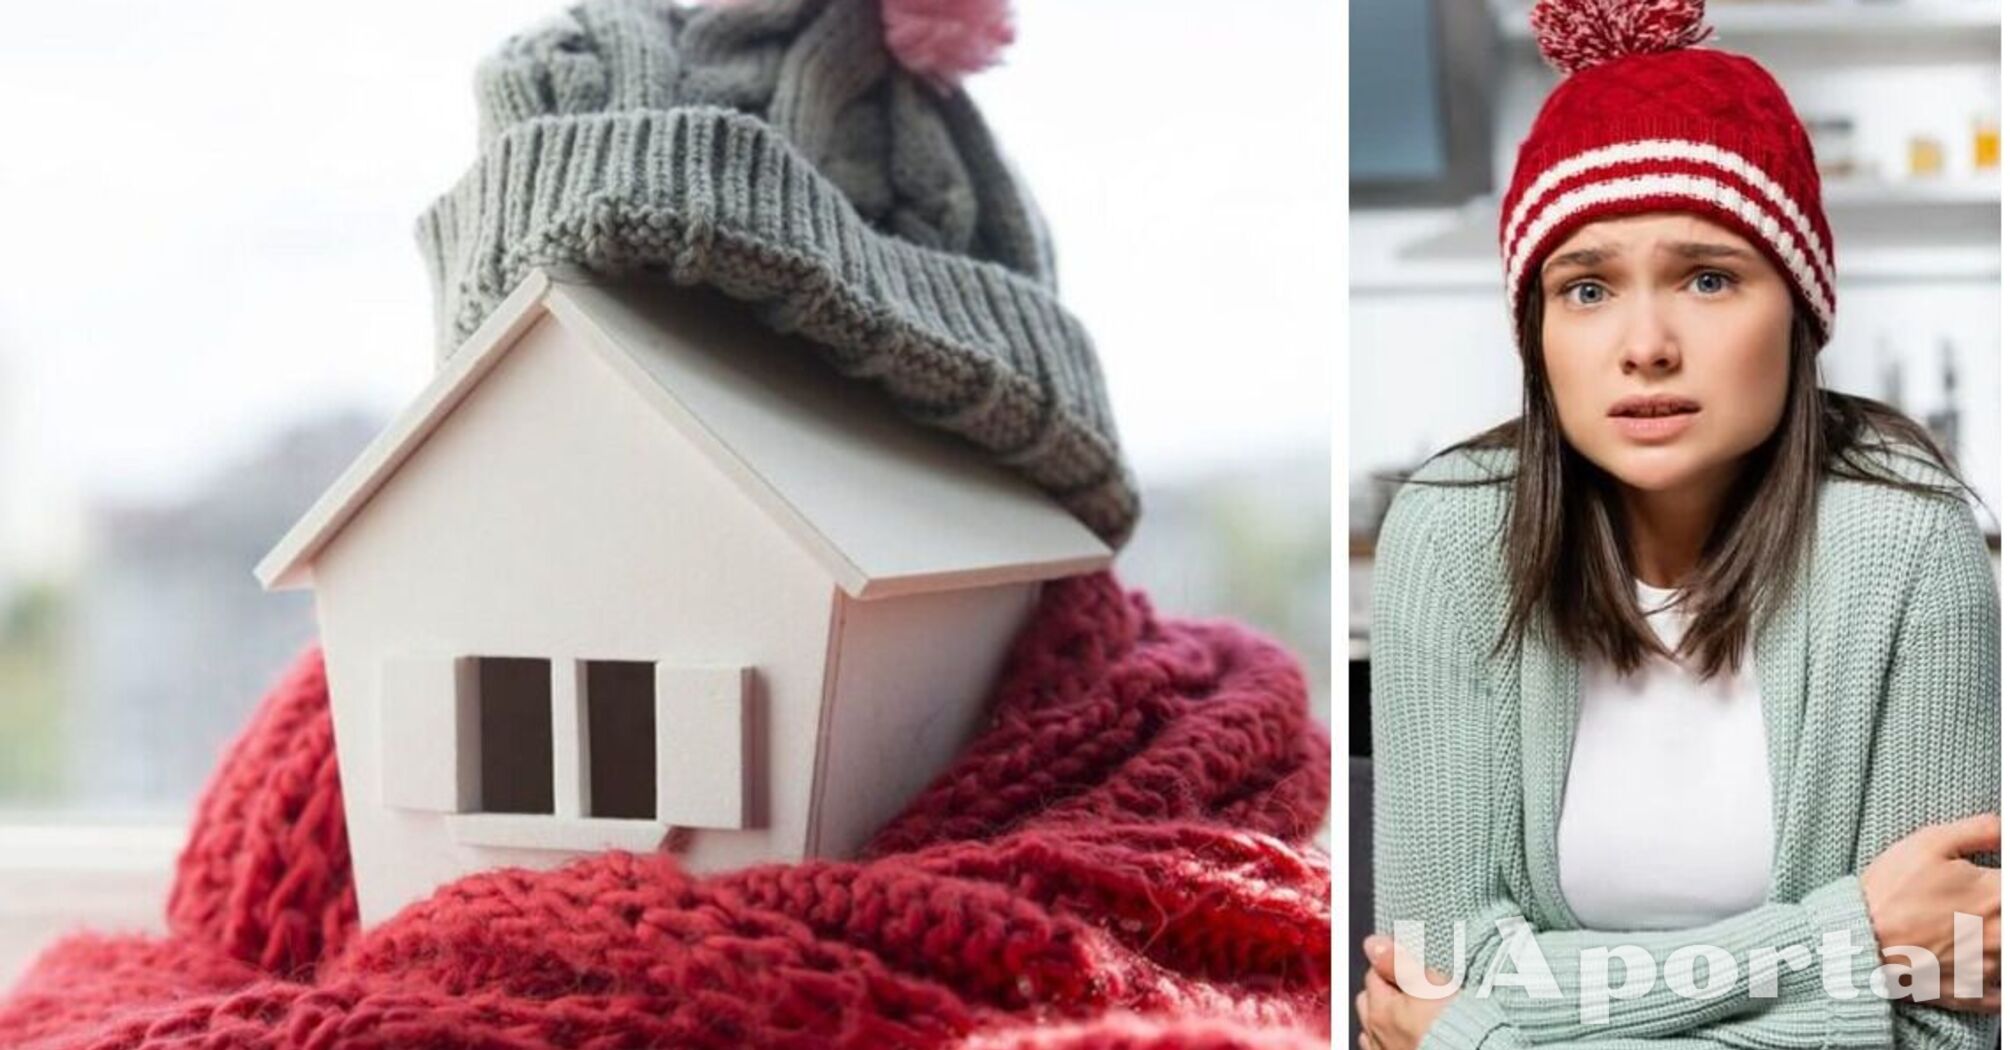 Как подготовить квартиру к холодам без значительных затрат: 3 главных совета